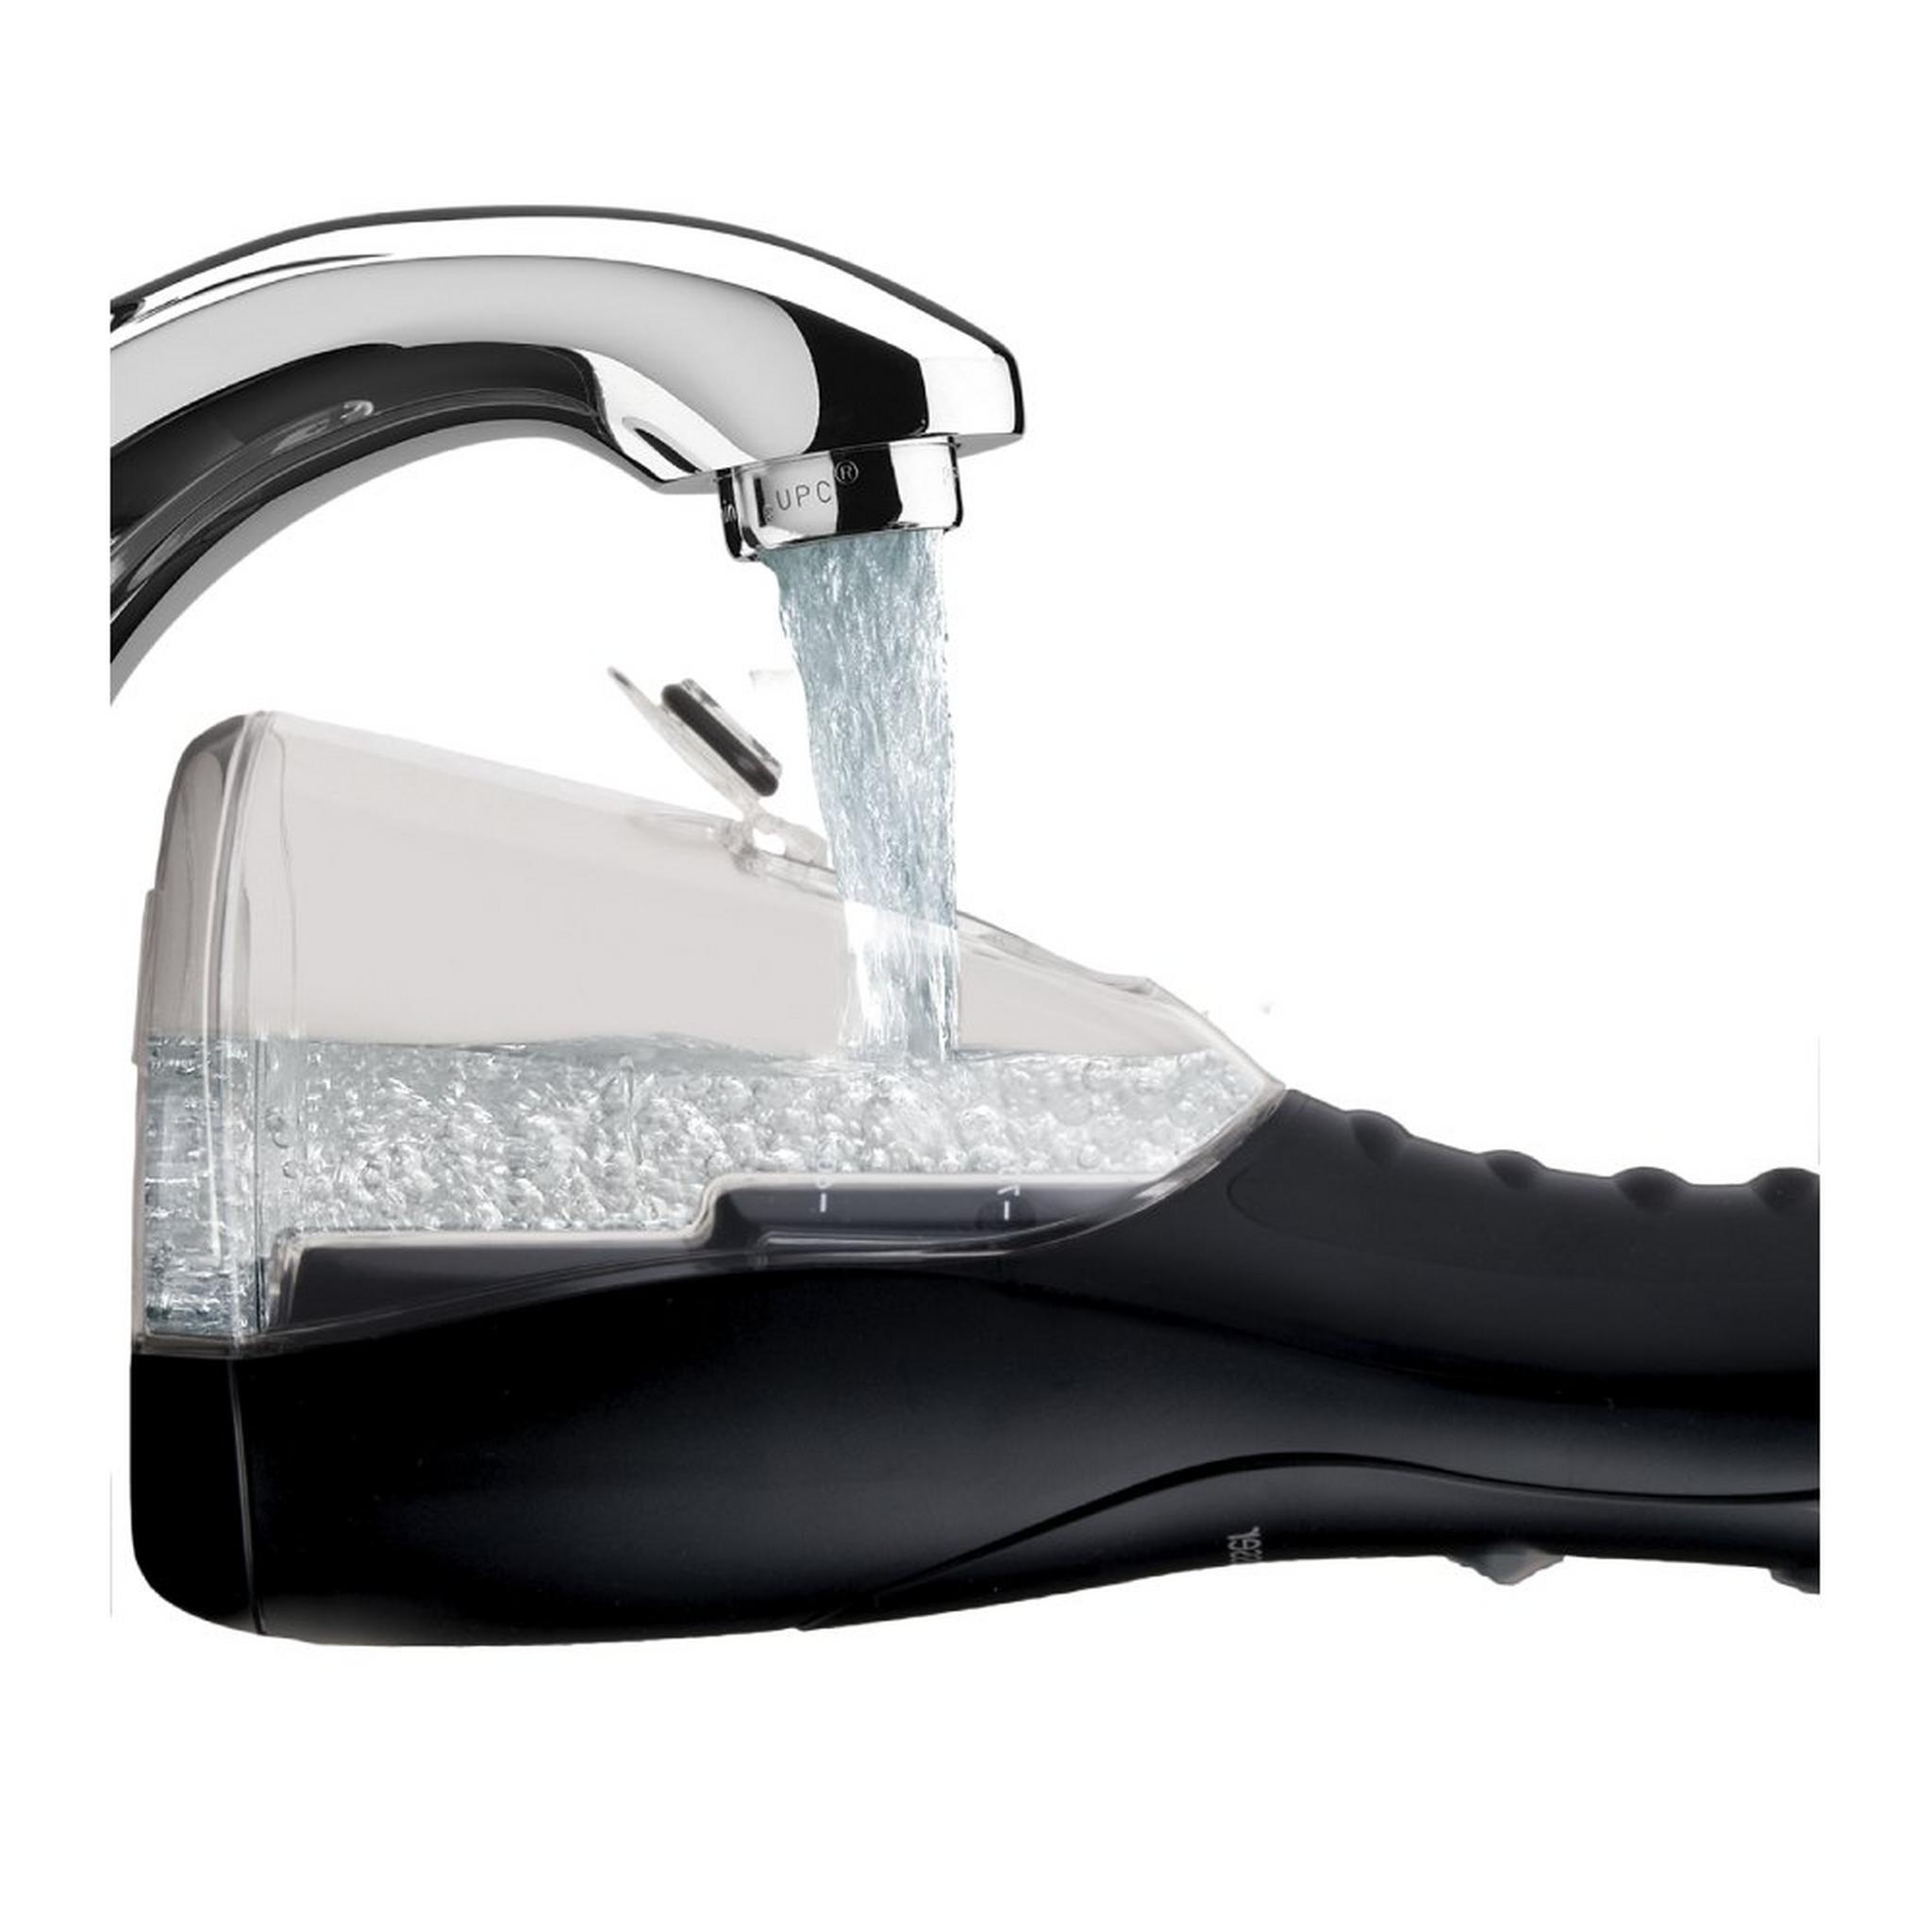 مضخة تنظيف الأسنان بالمياة بلس بدون سلك من واتربيك – أسود (WP-462ME)